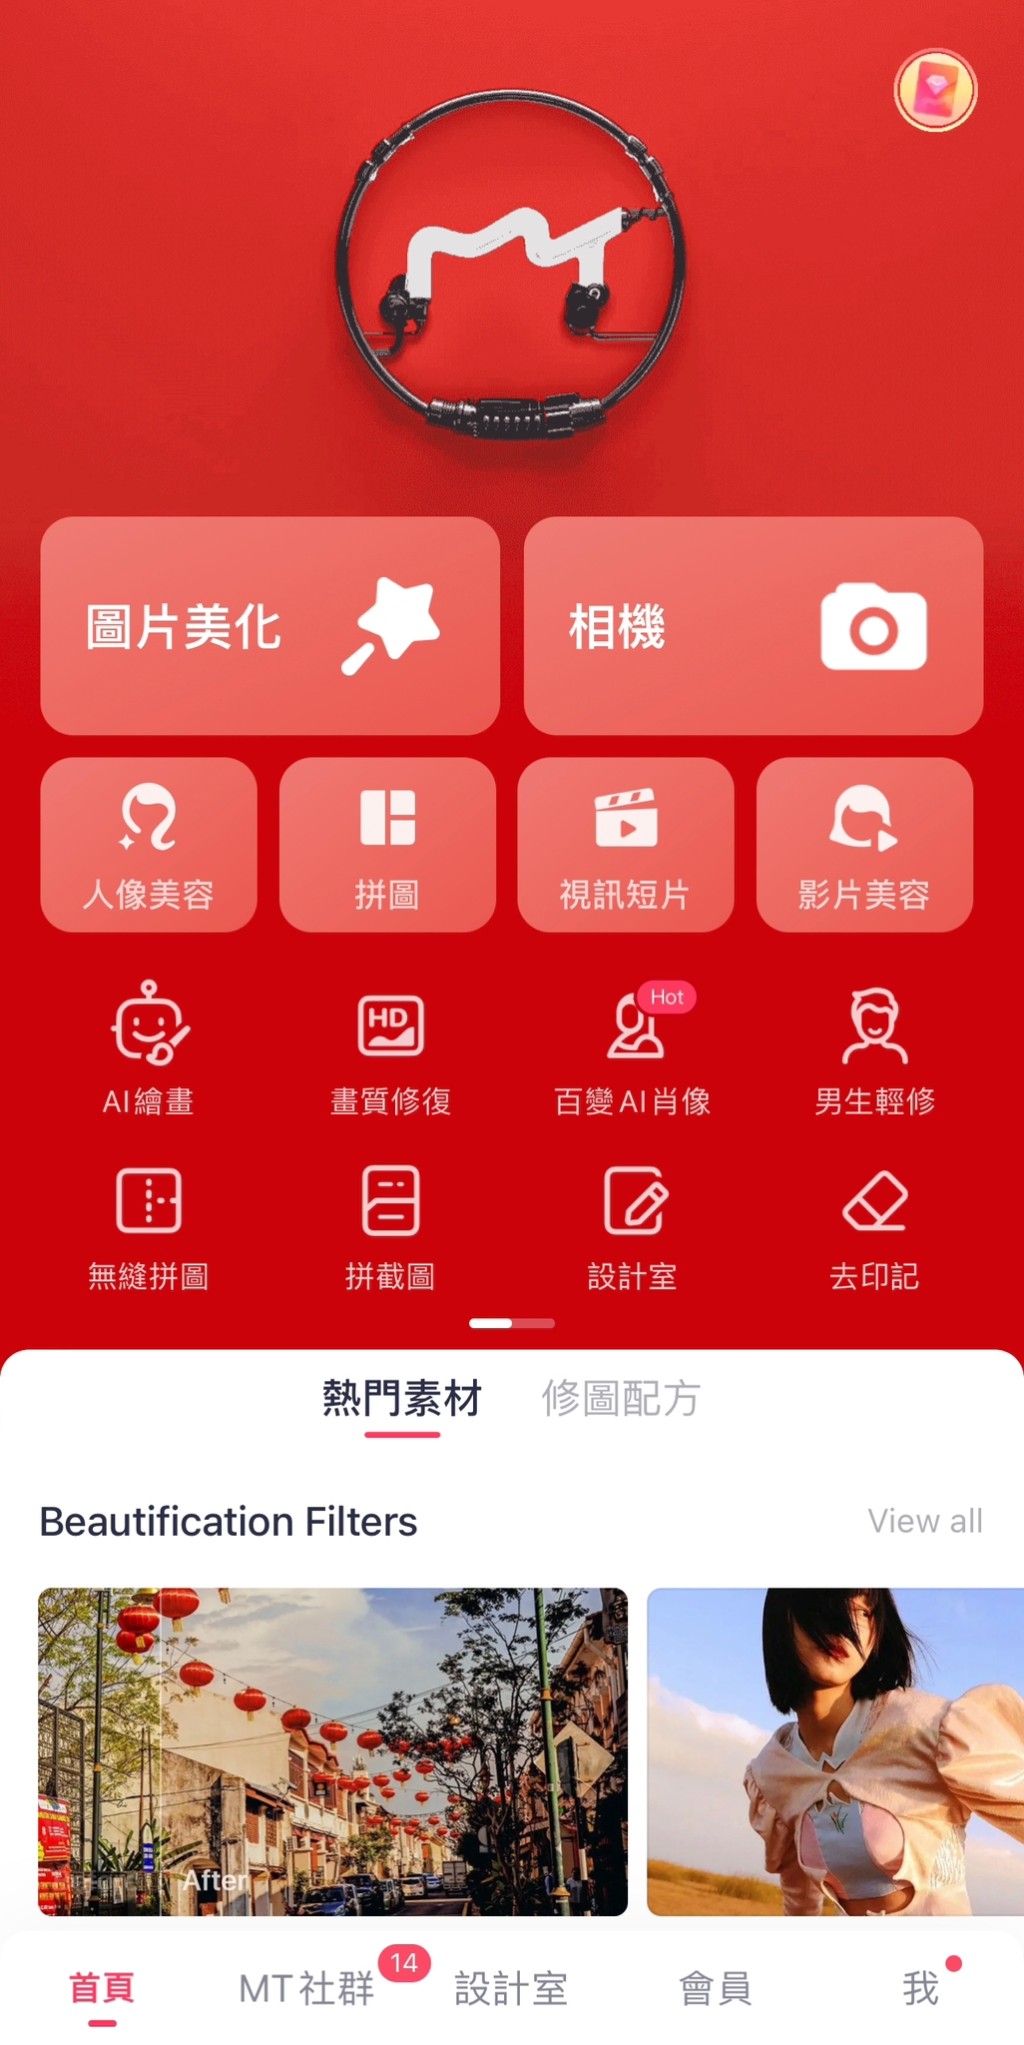 8款修图app推荐 手机影相必备  执相美图滤镜网红都用